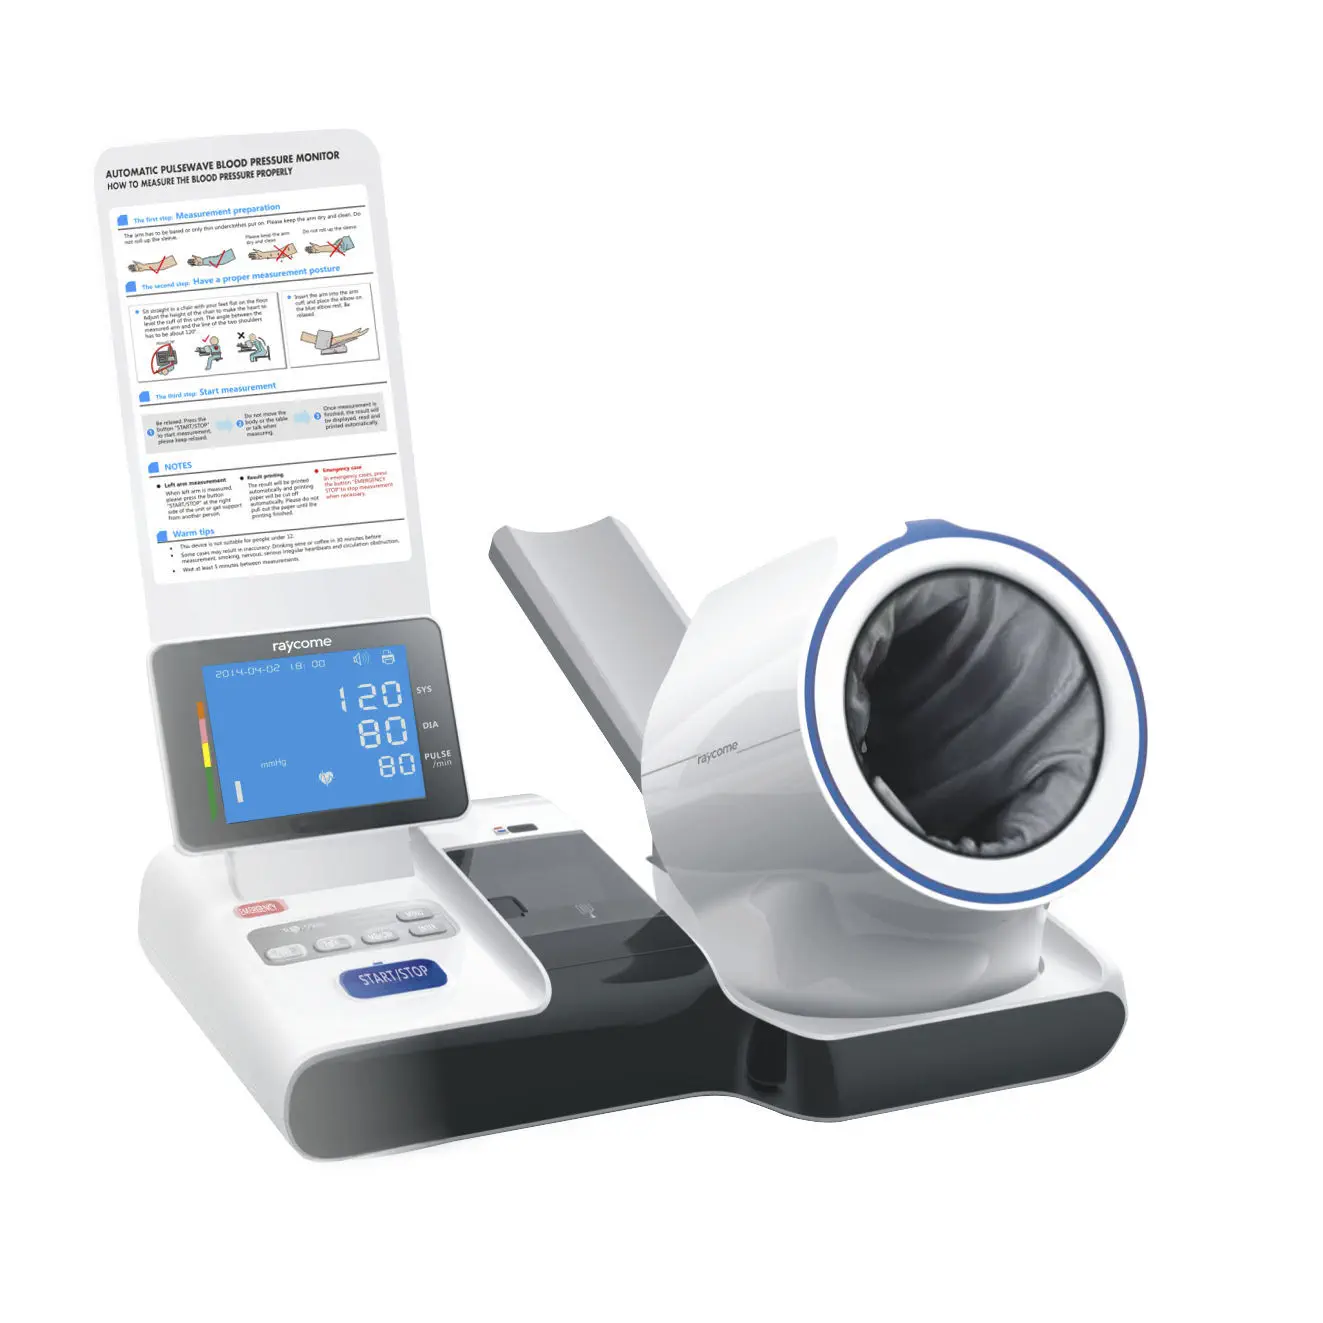 เครื่องวัดความดันโลหิตแบบสอดแขนชนิดอัตโนมัติ  Automatic blood pressure monitor RBP-9000  Raycome